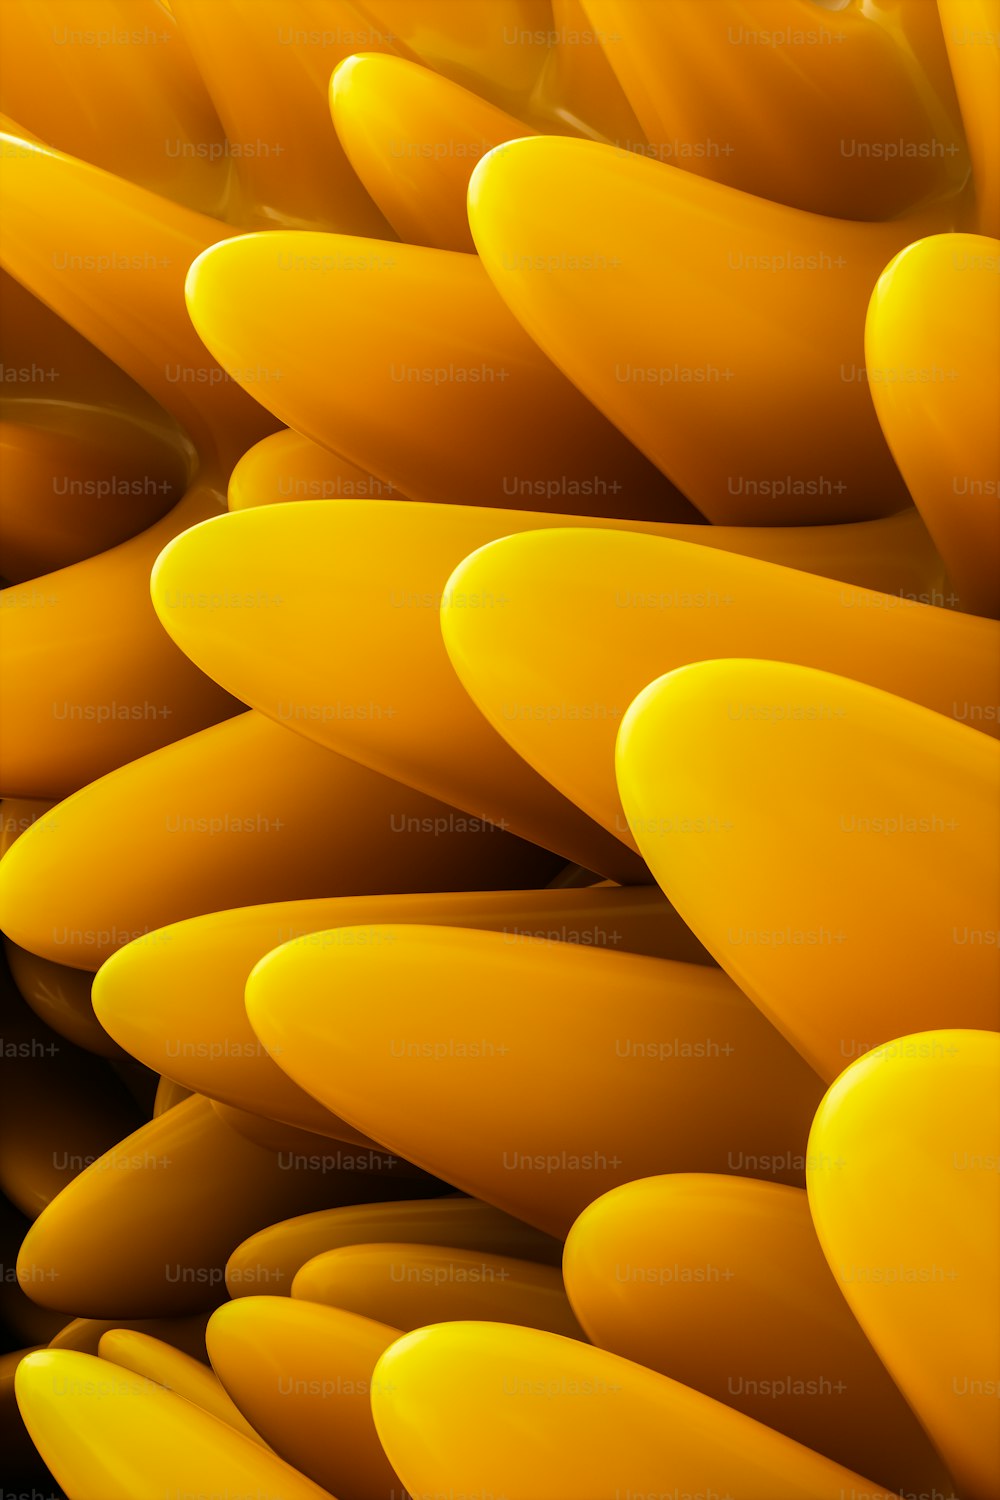 Un primer plano de un manojo de plátanos amarillos